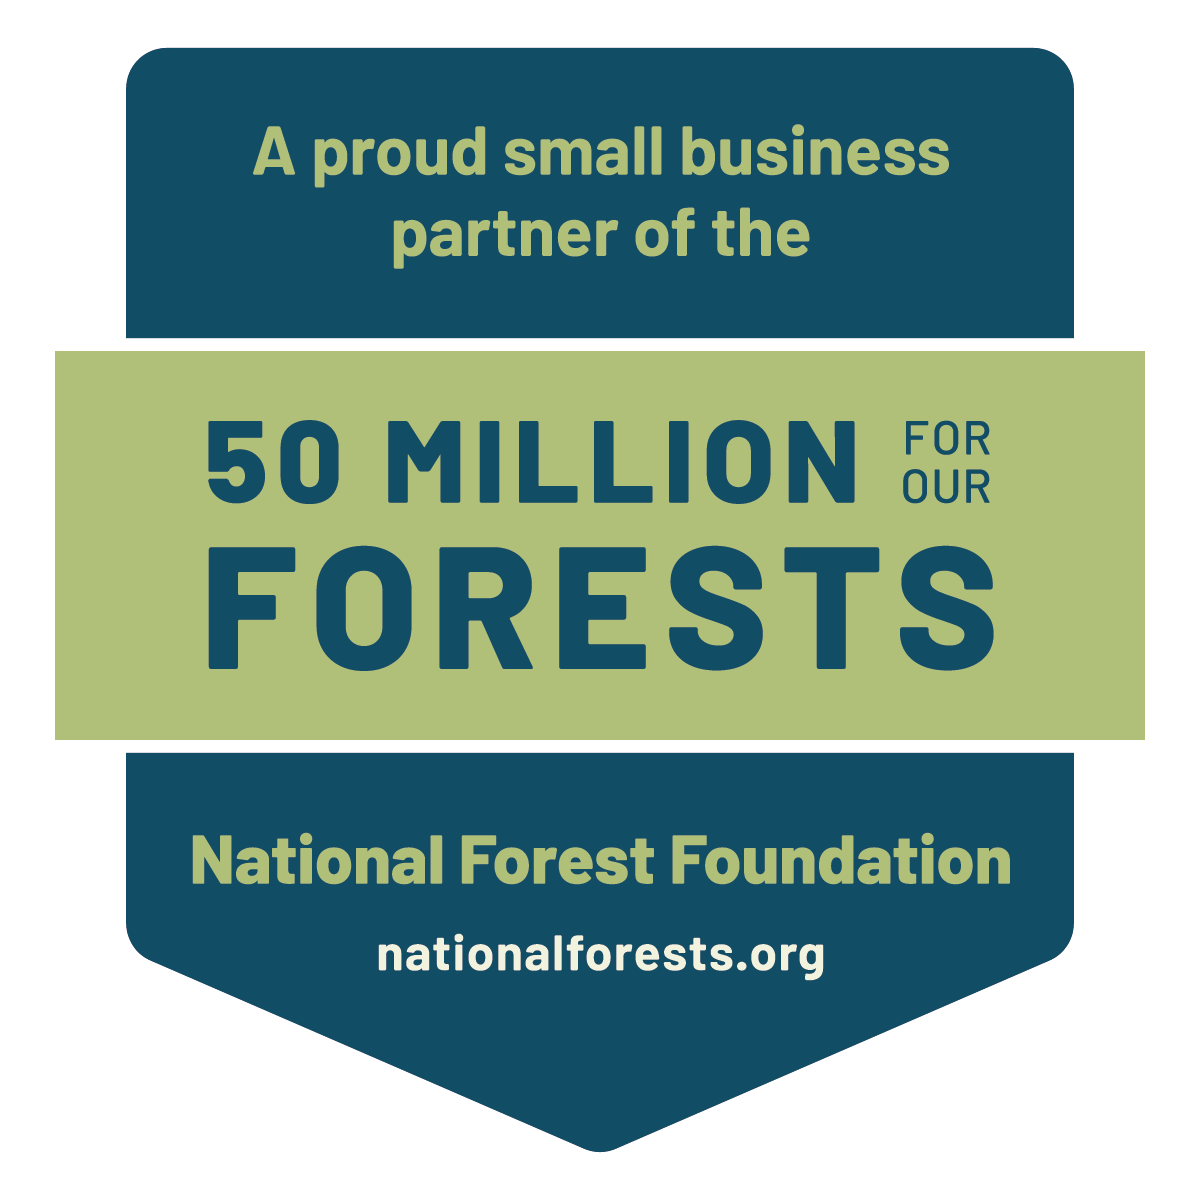 National Forest Foundation partner